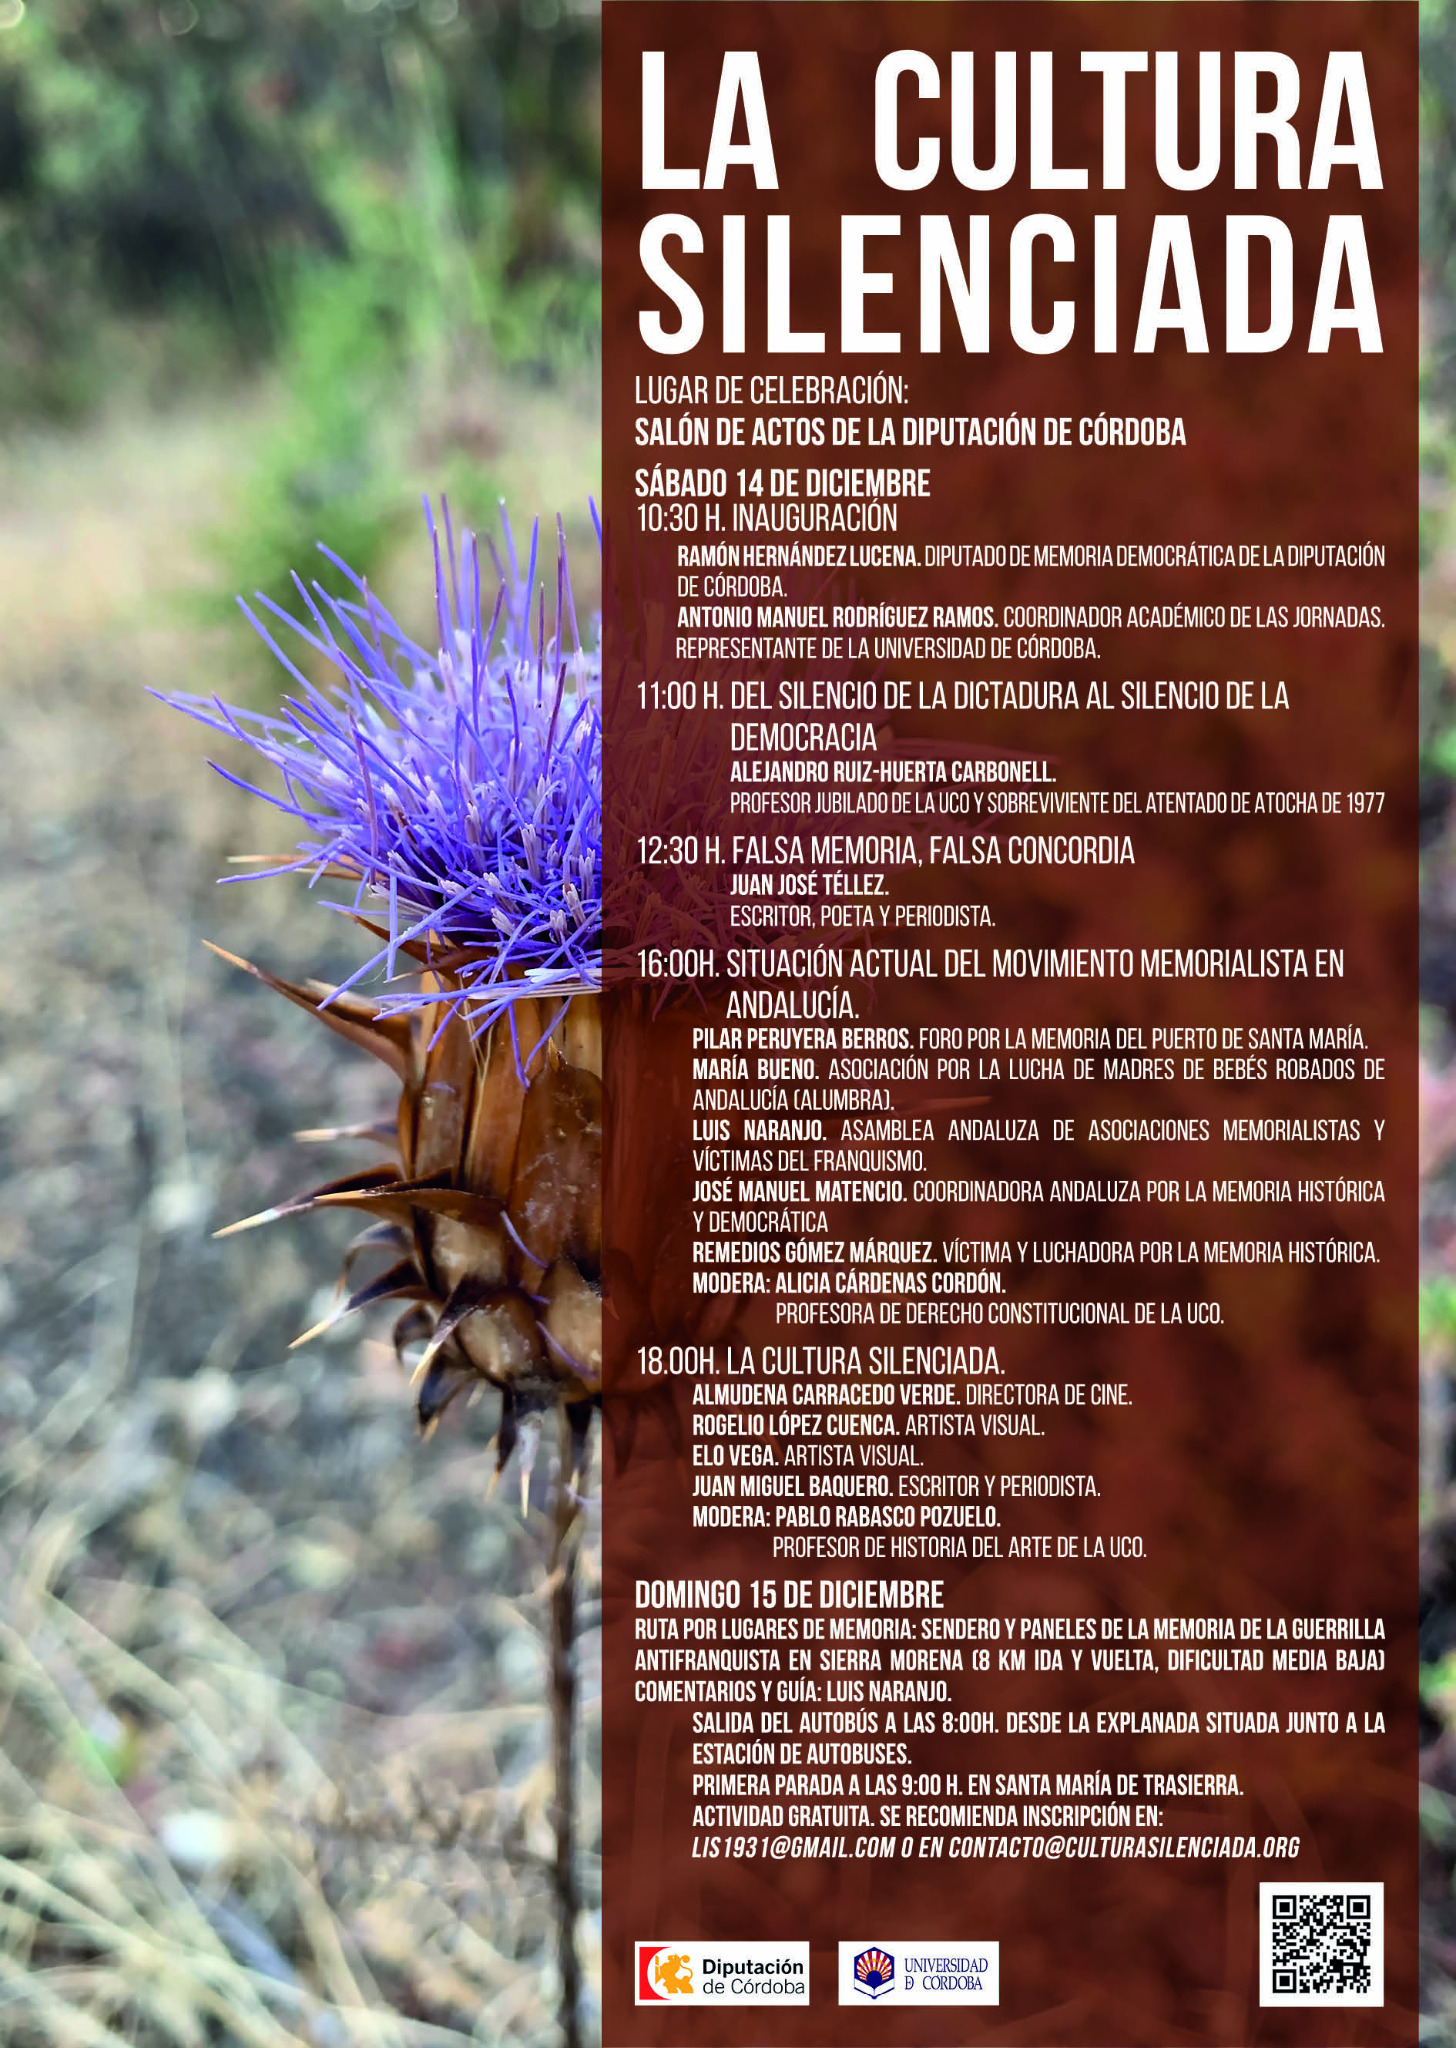 Los próximos 14 y 15 de diciembre, desde las 10:30 h., tendrá lugar en el salón de actos de la Diputación de Córdoba las I Jornadas "La cultura silenciada"